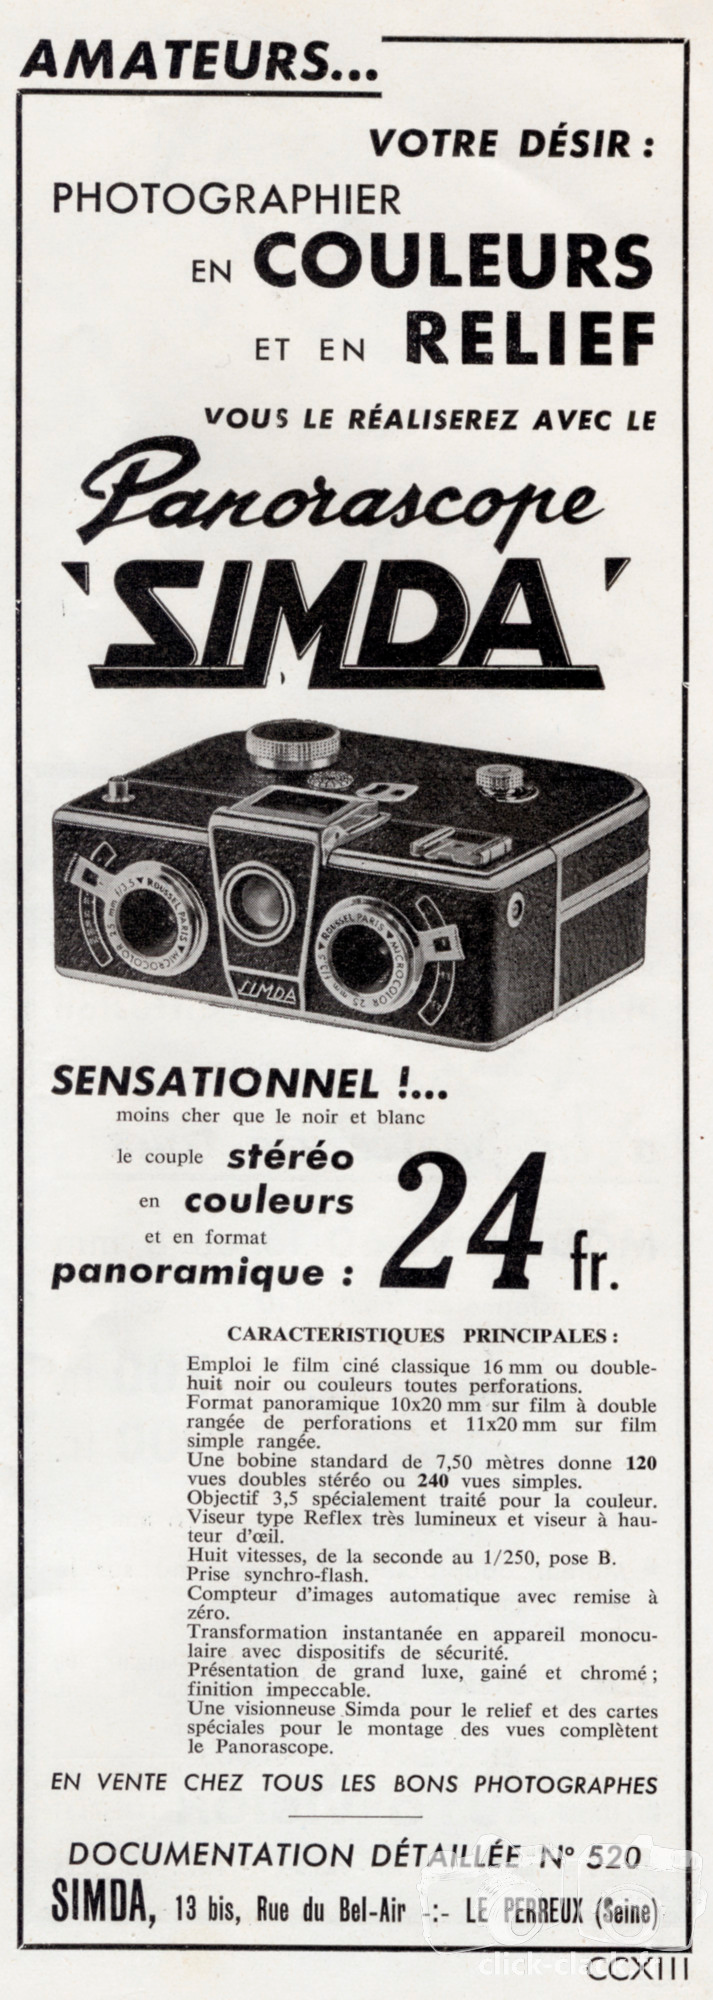 SIMDA - Panorascope relief et couleur - novembre 1956 - Photo-Cinéma